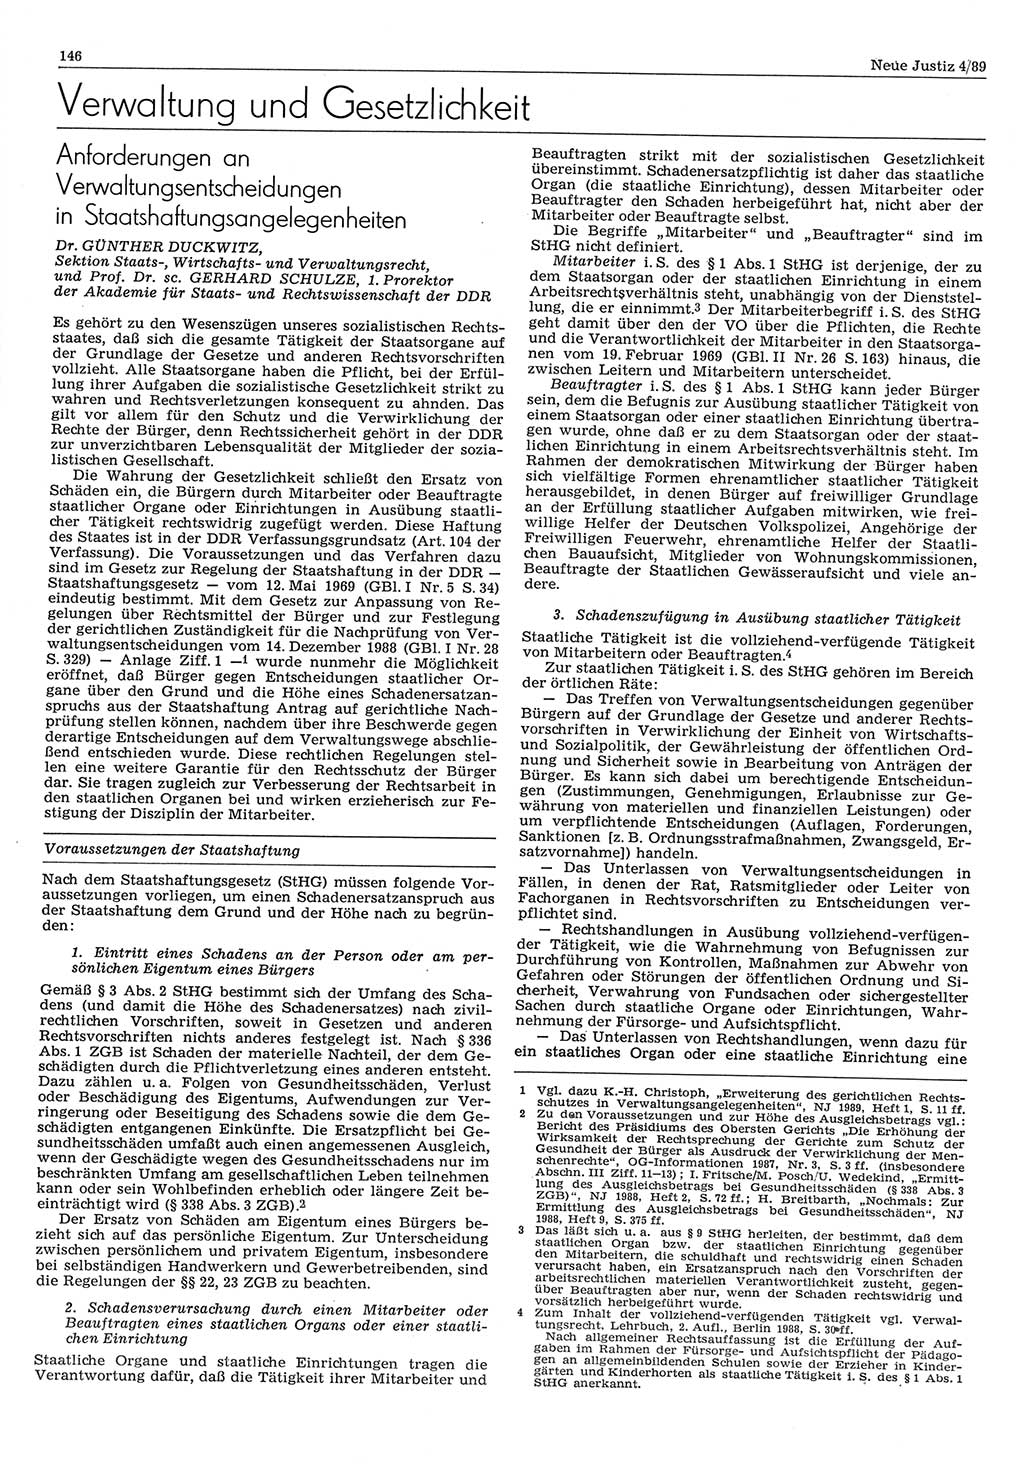 Neue Justiz (NJ), Zeitschrift für sozialistisches Recht und Gesetzlichkeit [Deutsche Demokratische Republik (DDR)], 43. Jahrgang 1989, Seite 146 (NJ DDR 1989, S. 146)